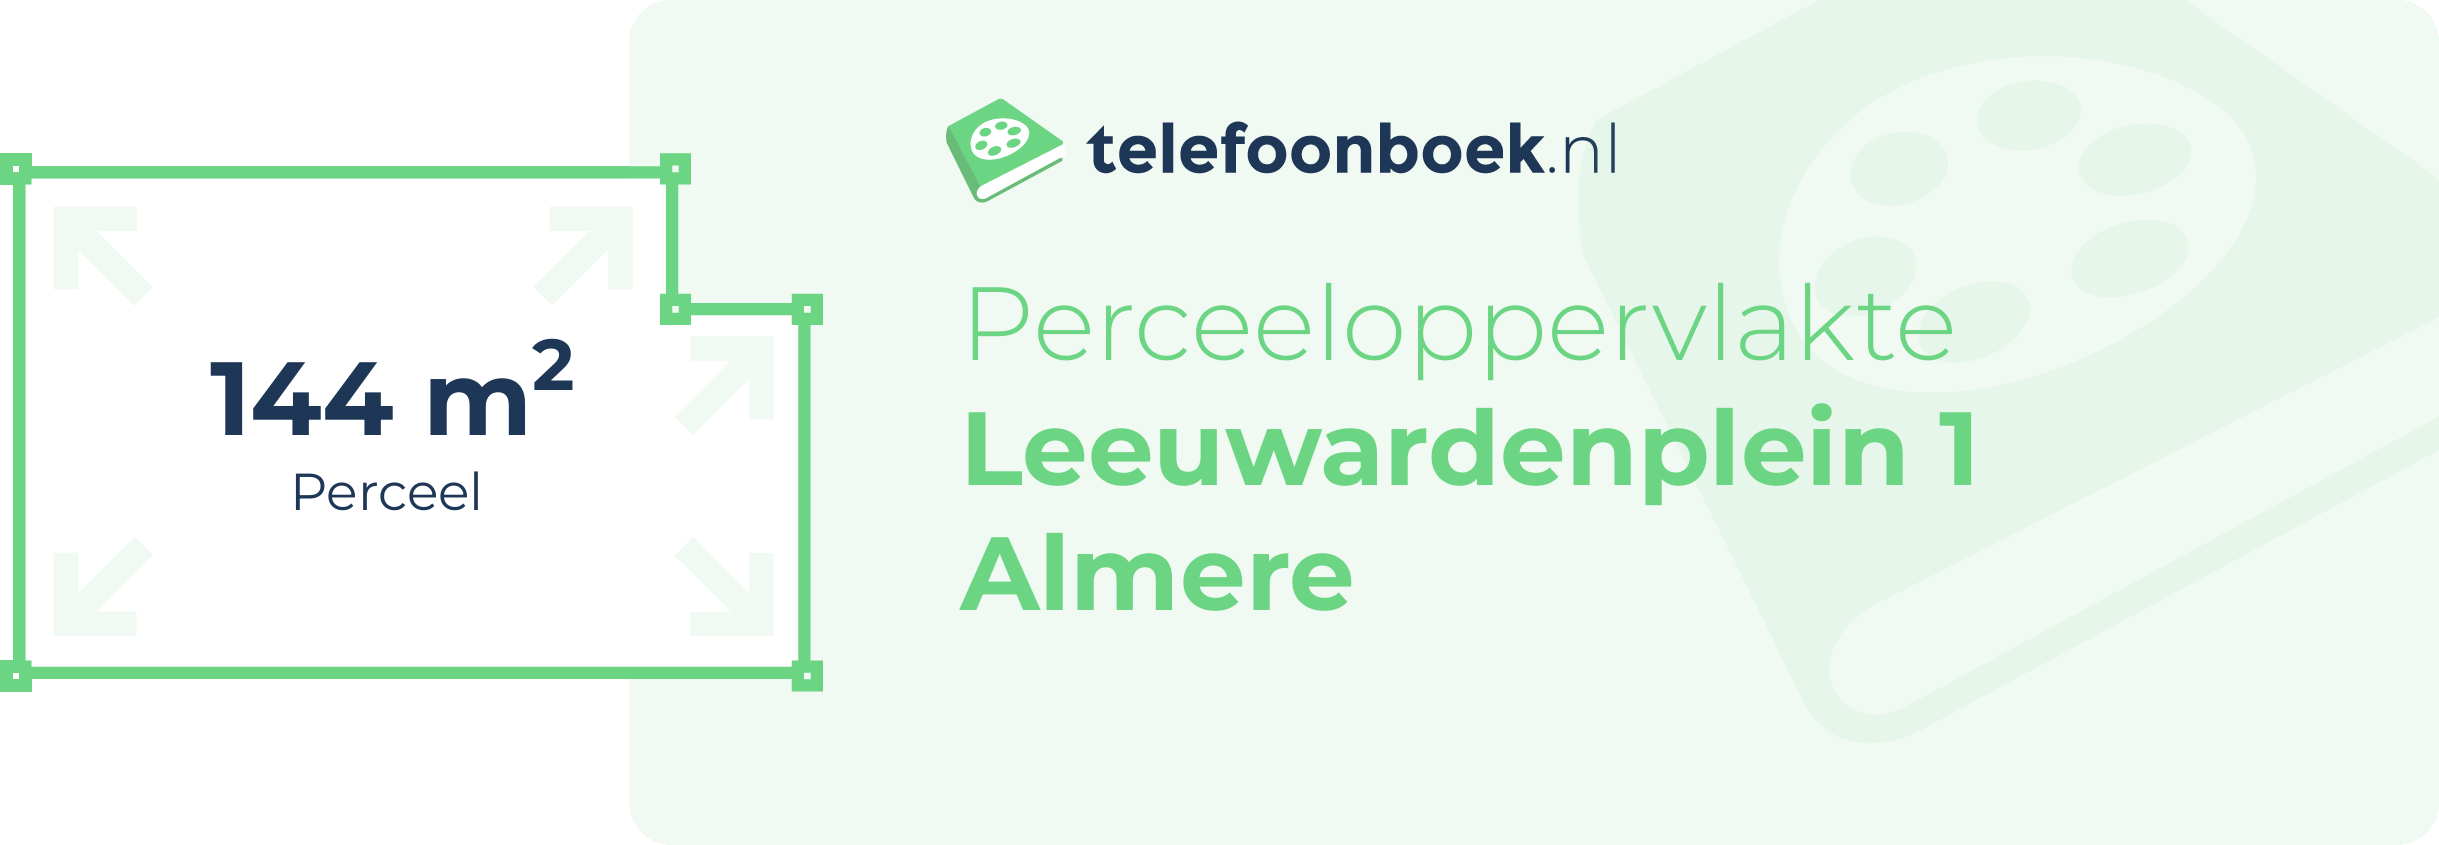 Perceeloppervlakte Leeuwardenplein 1 Almere